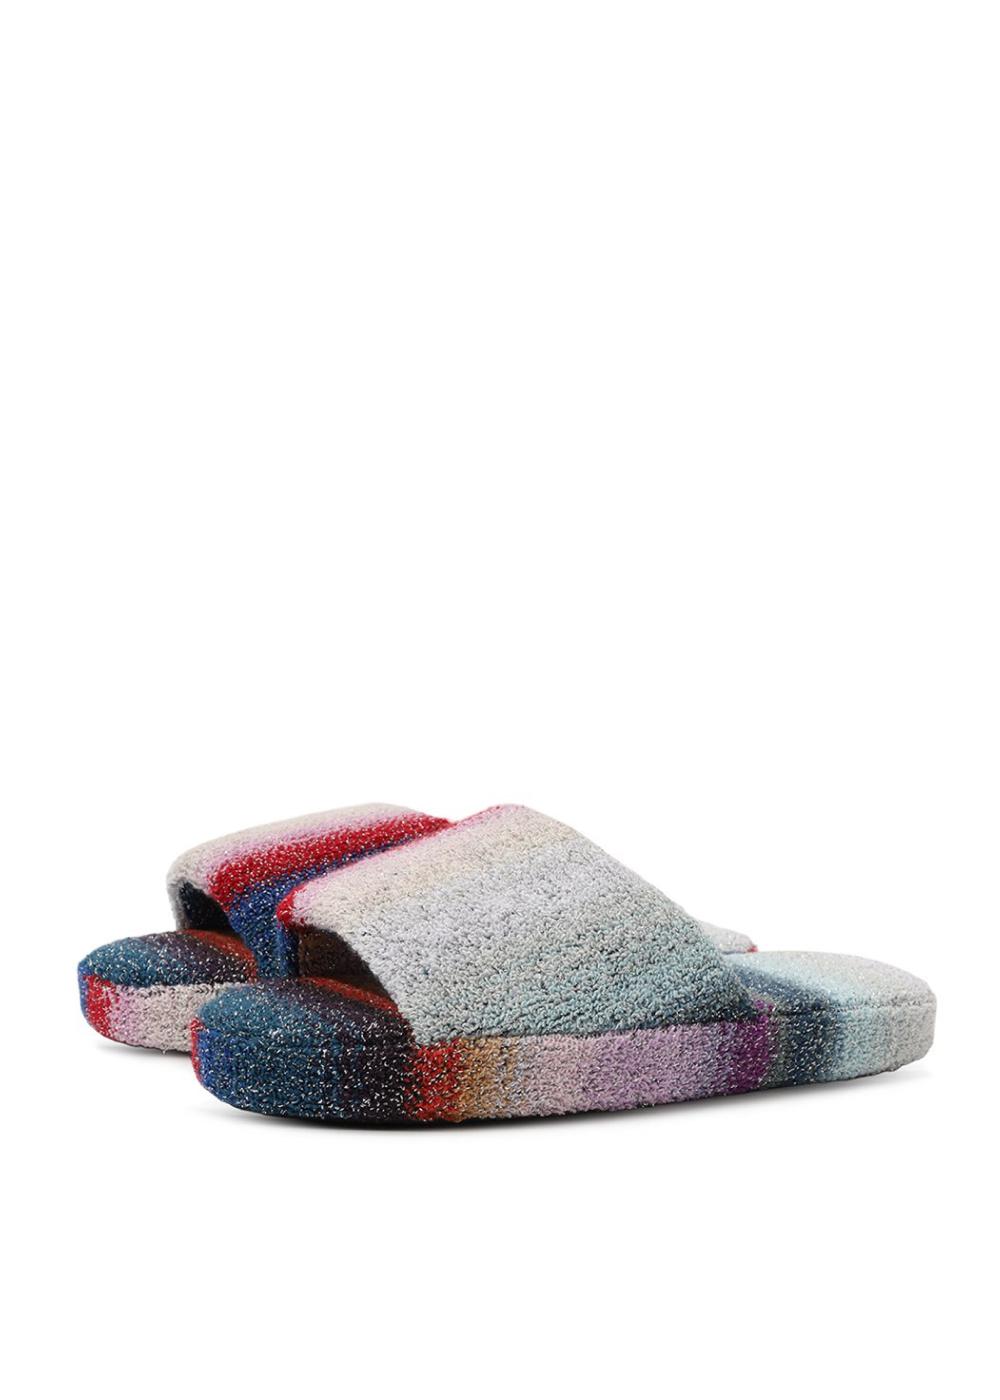 Missoni Home slippers, RUB 35,950.  (tsum.ru)